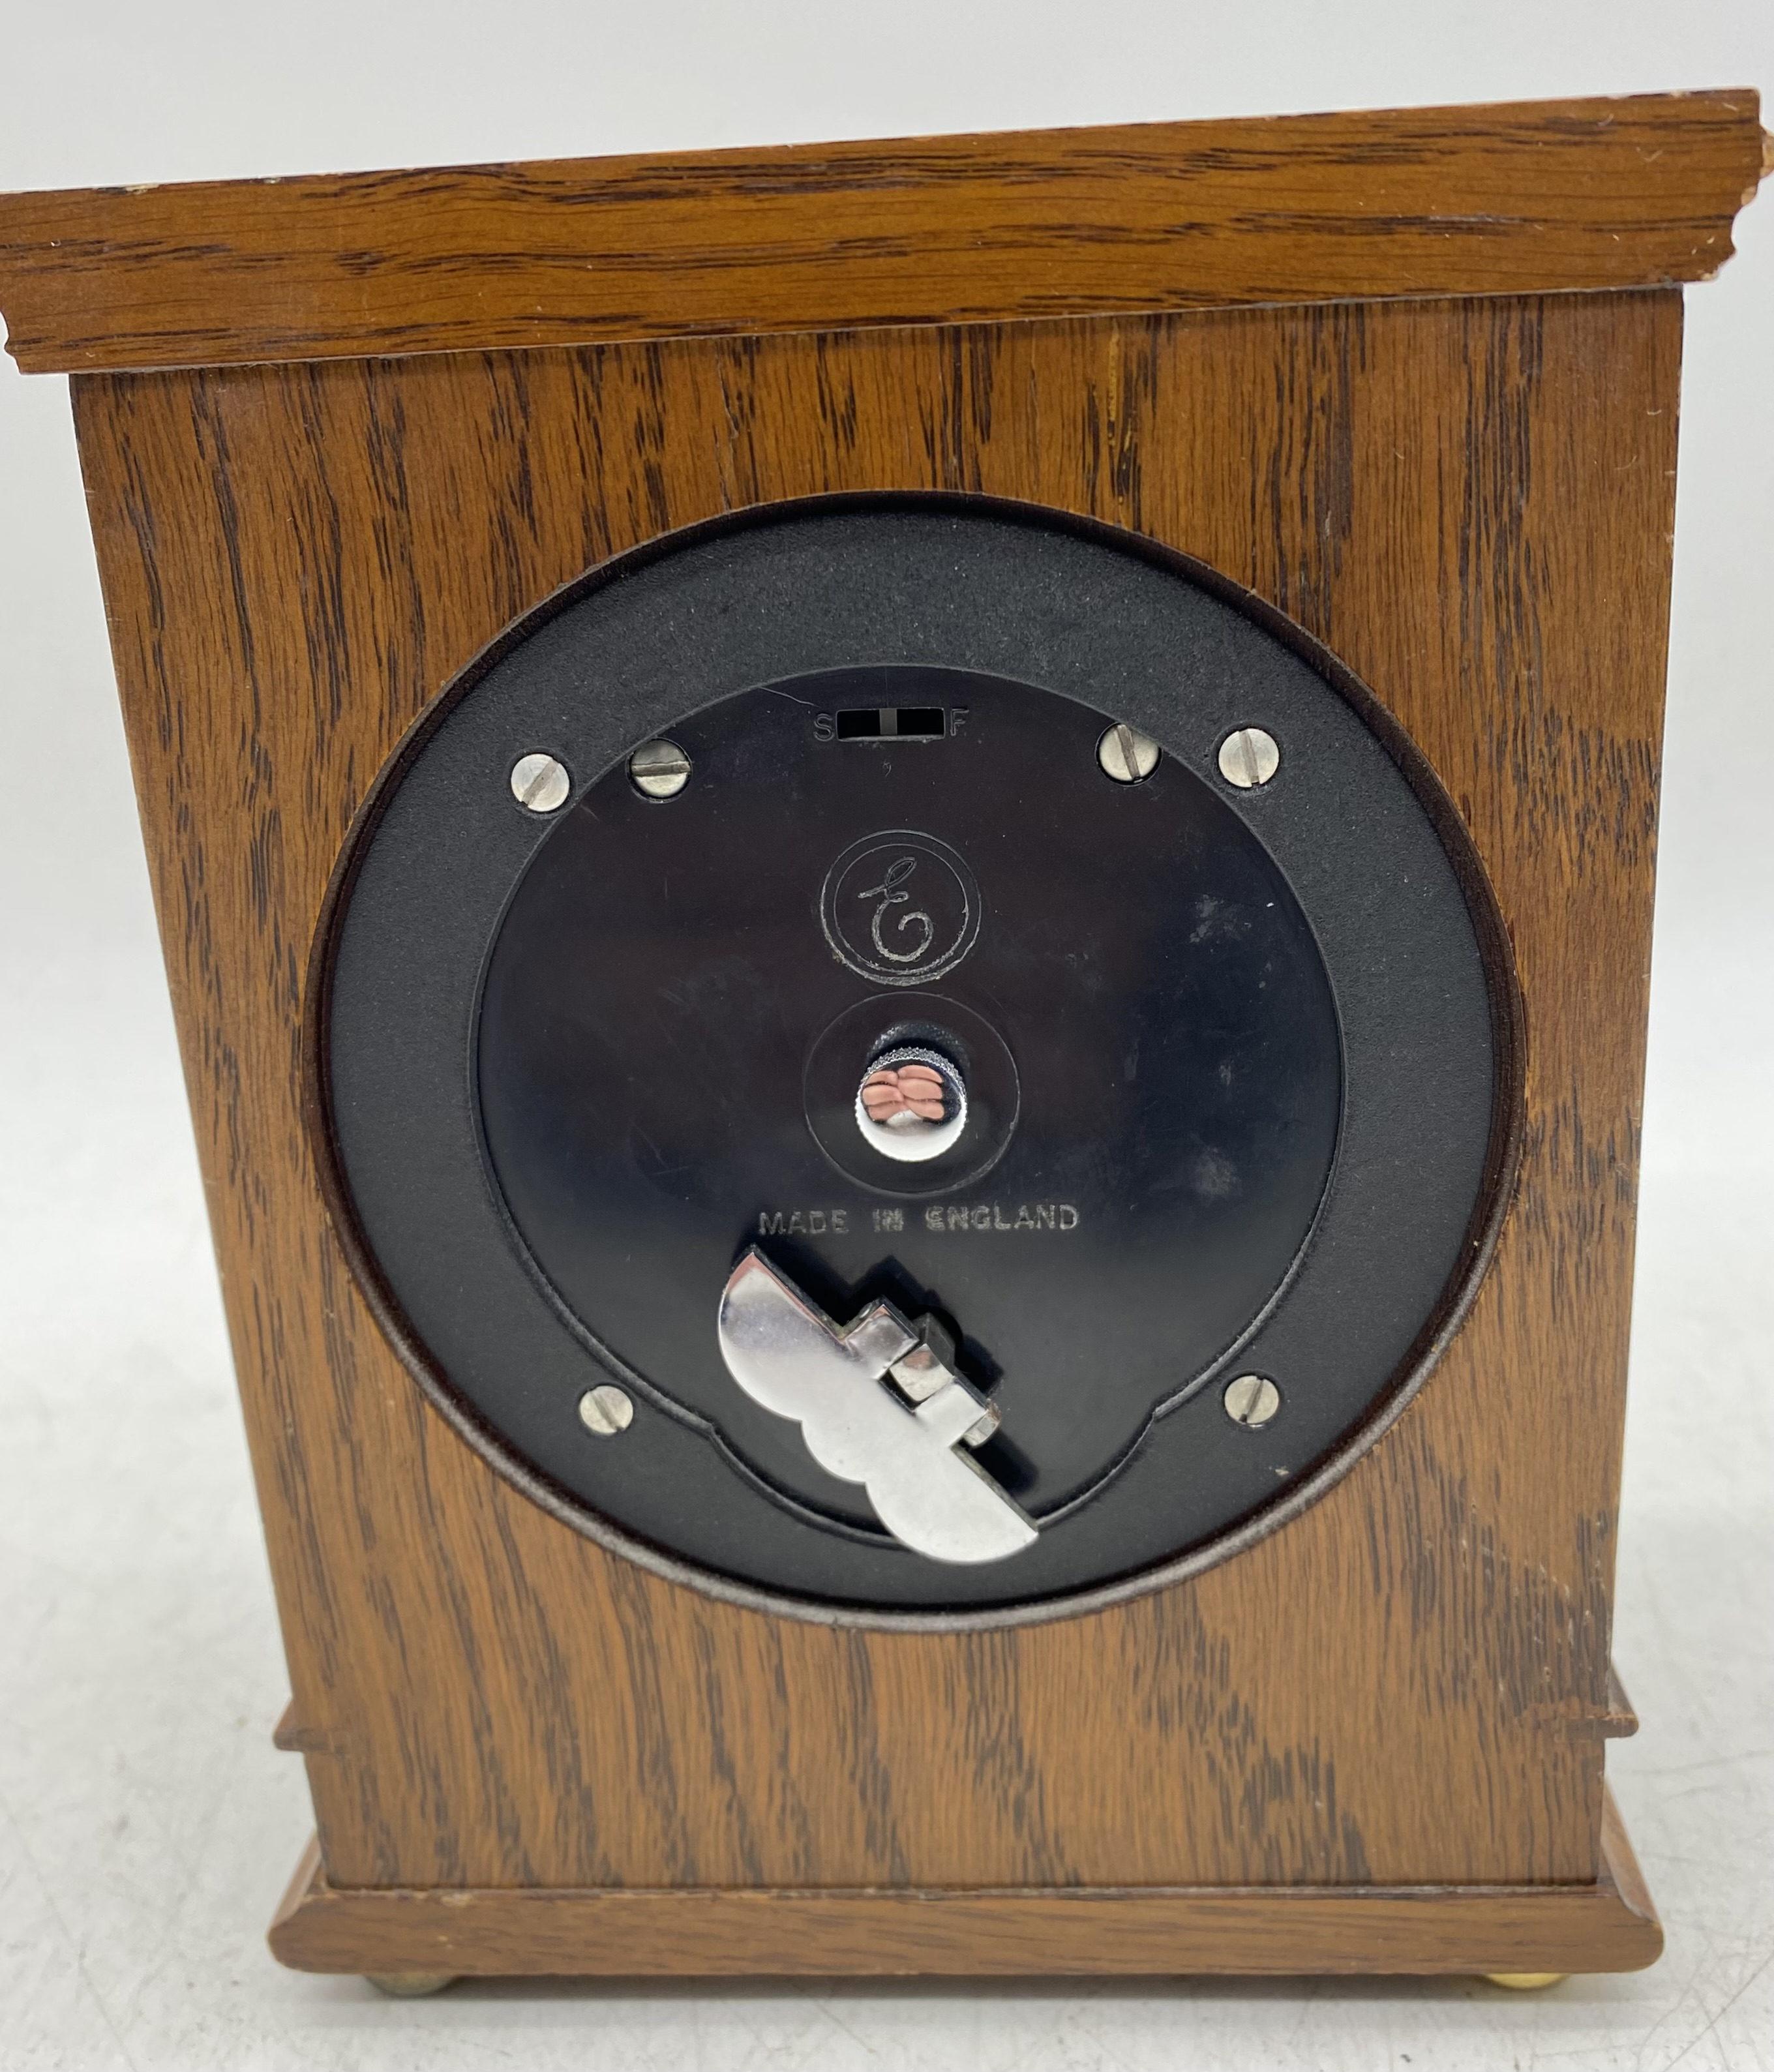 An Elliott of London small bracket clock in oak case along with a brass Swiza alarm clock - Image 5 of 9